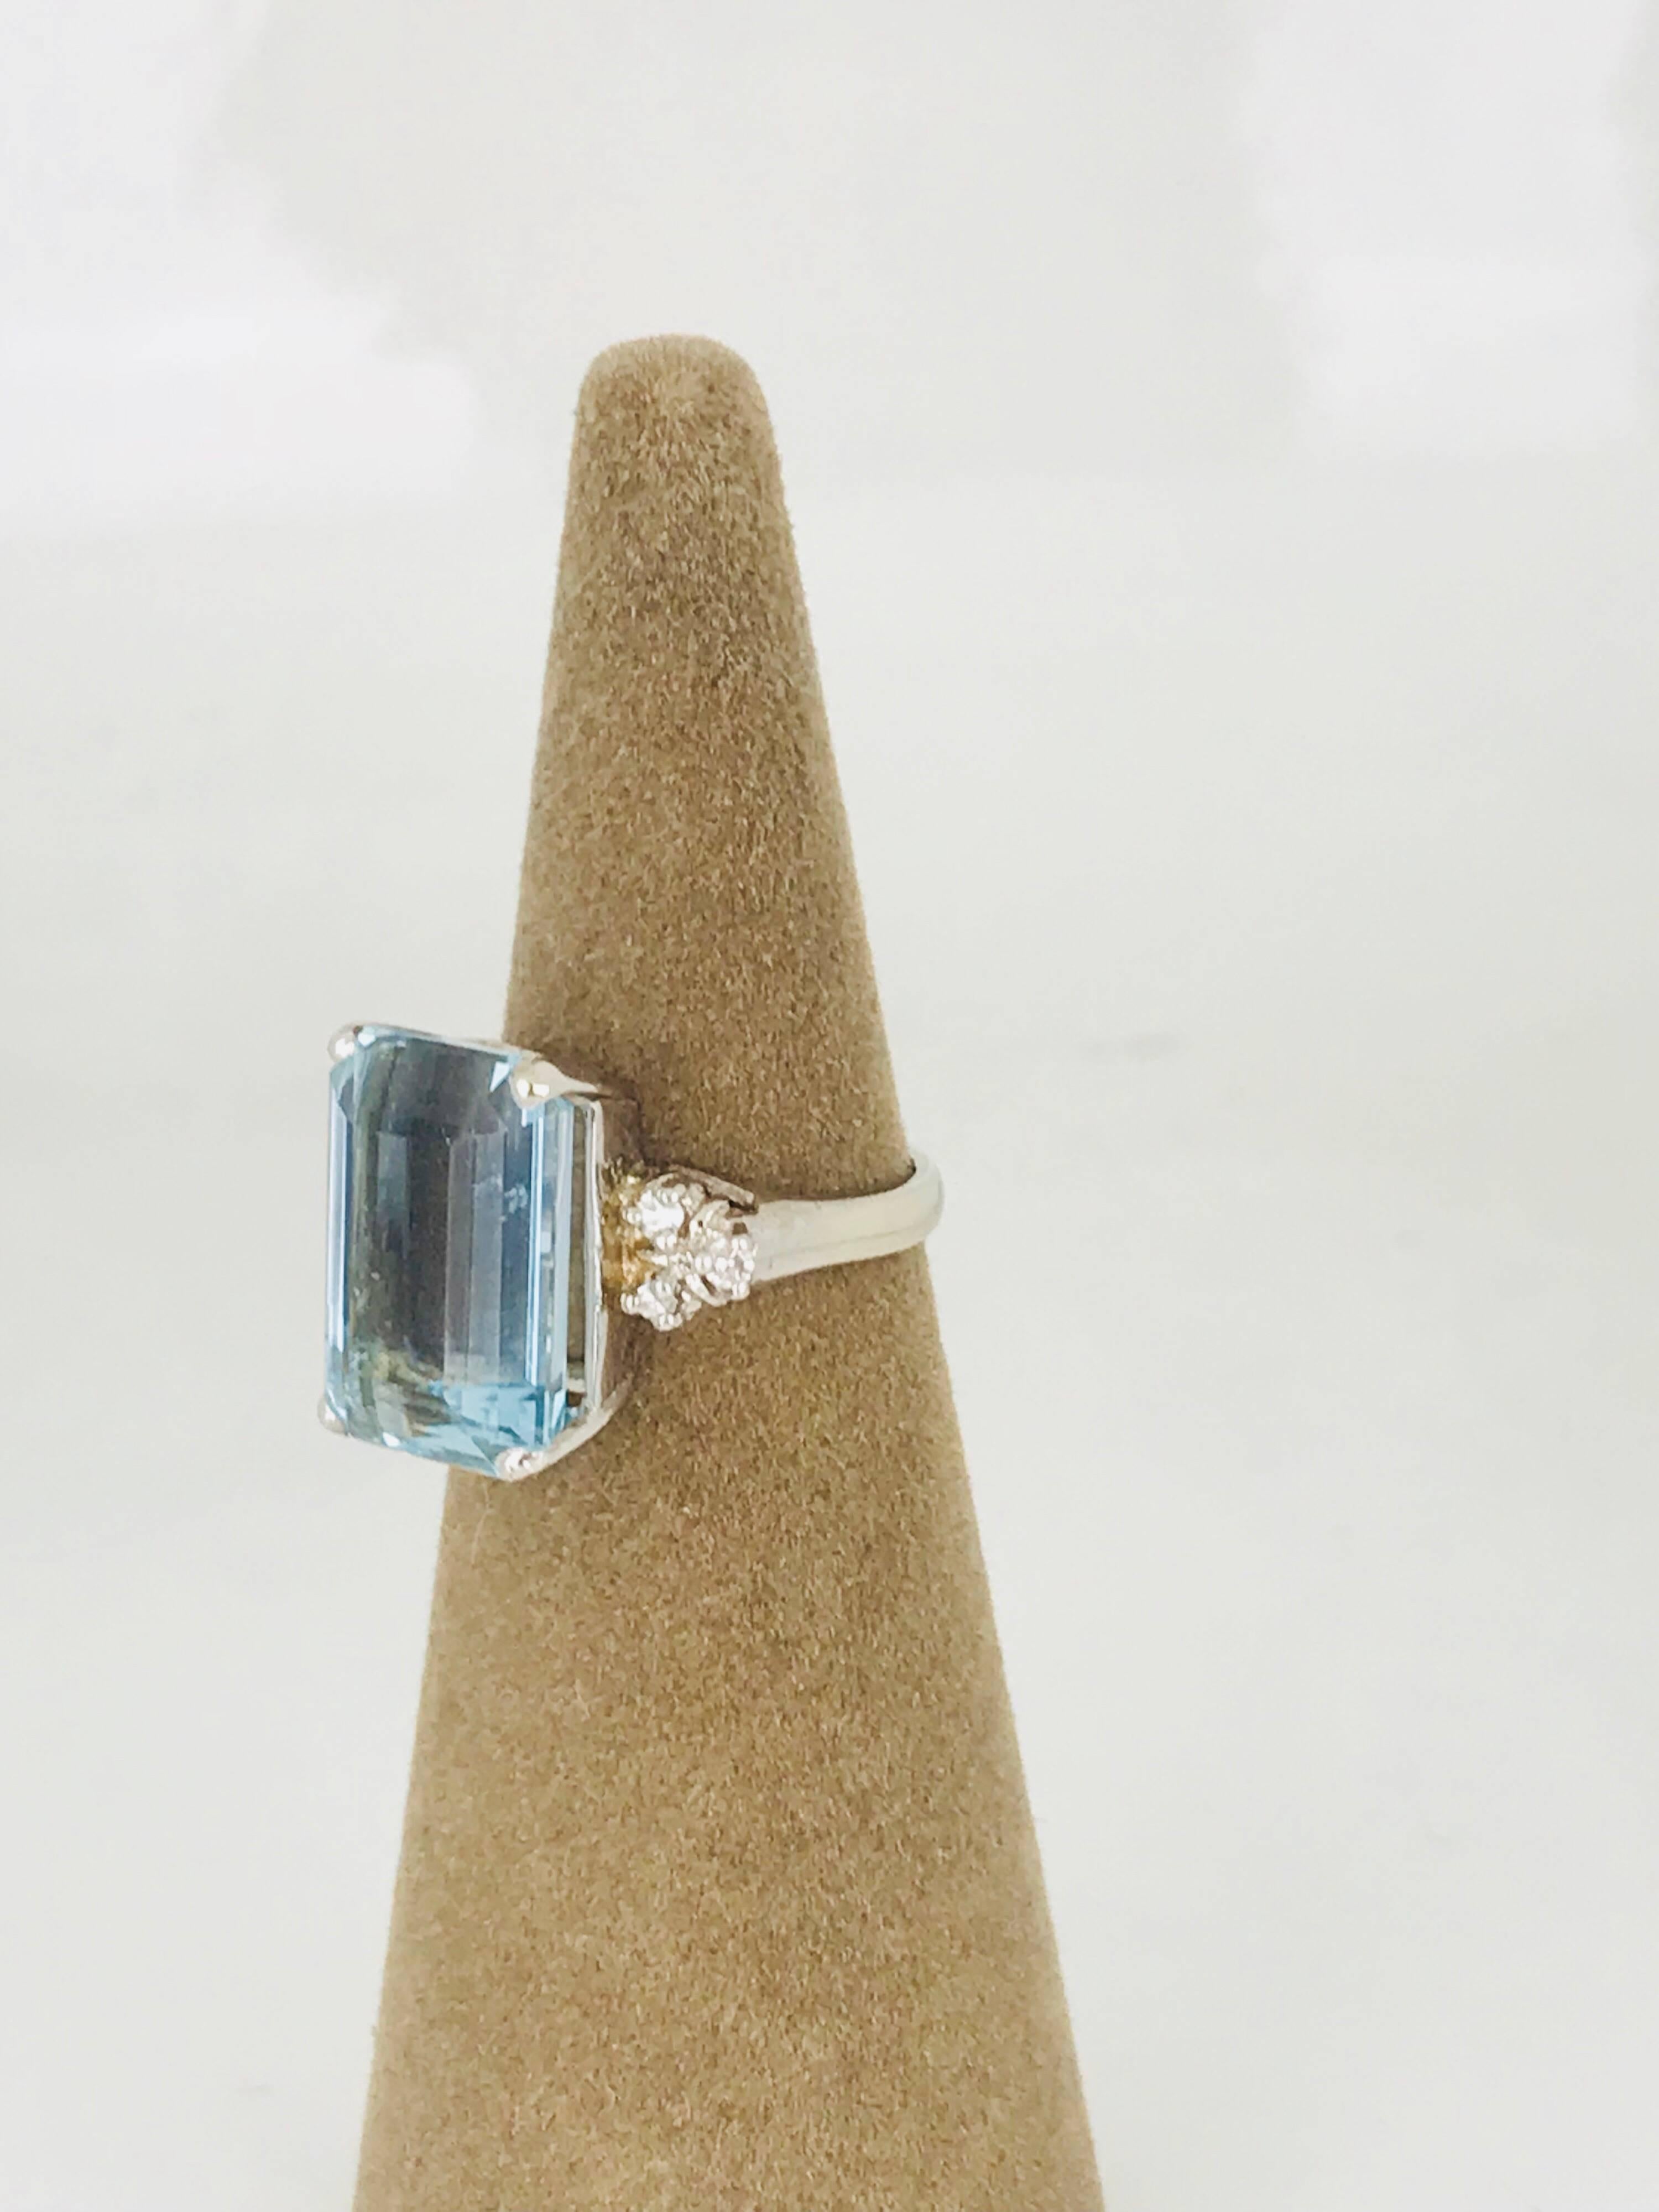 Aquamarine 13.00 Carat Emerald Cut Ring with Diamonds, Retro, circa 1965 For Sale 2